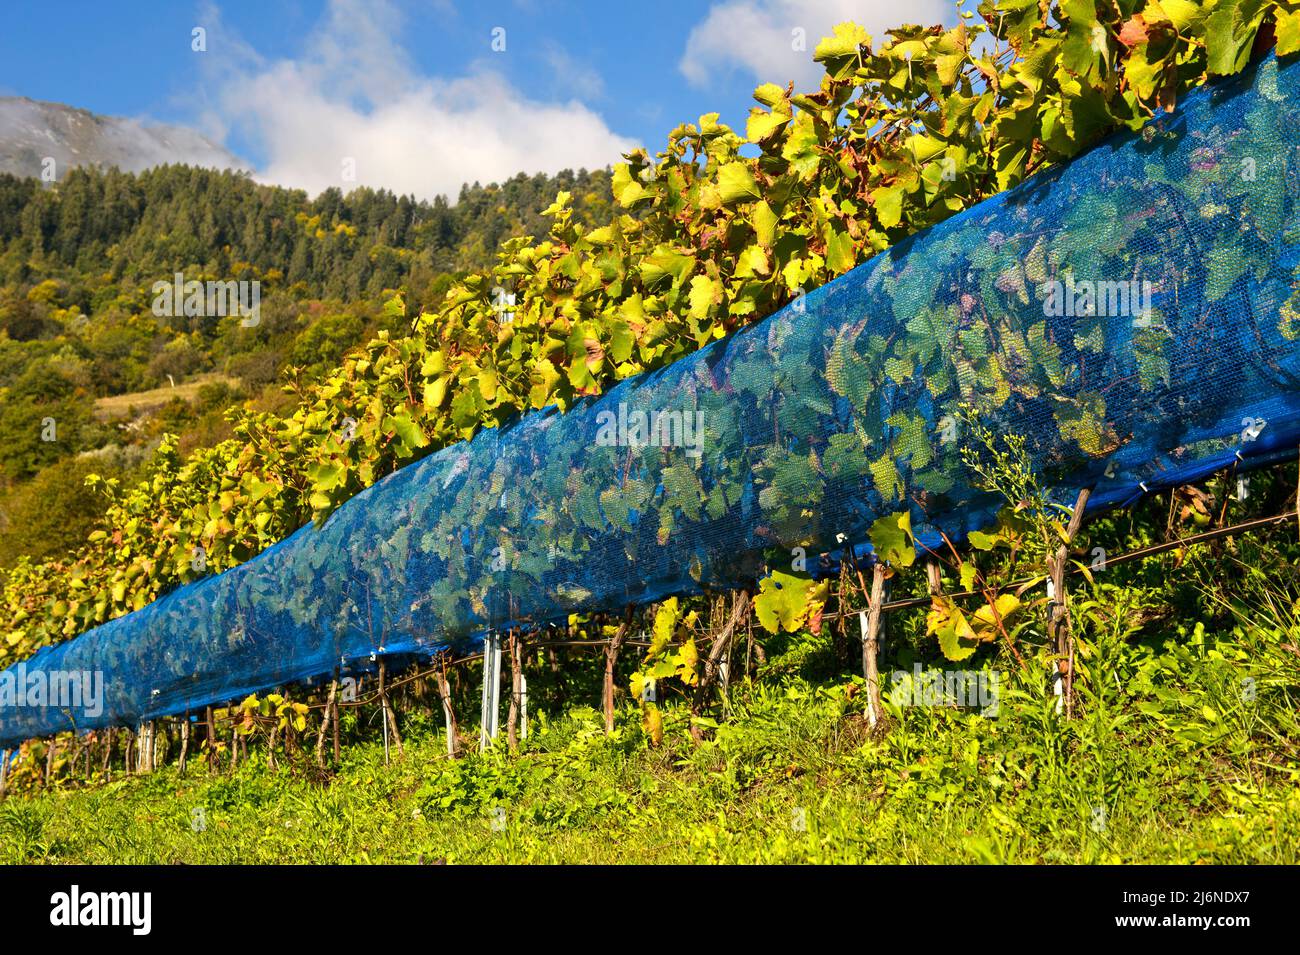 Les filets bleus de protection des oiseaux protègent contre les dommages aux oiseaux dans un vignoble de la région viticole de Leytron, Valais, Suisse Banque D'Images